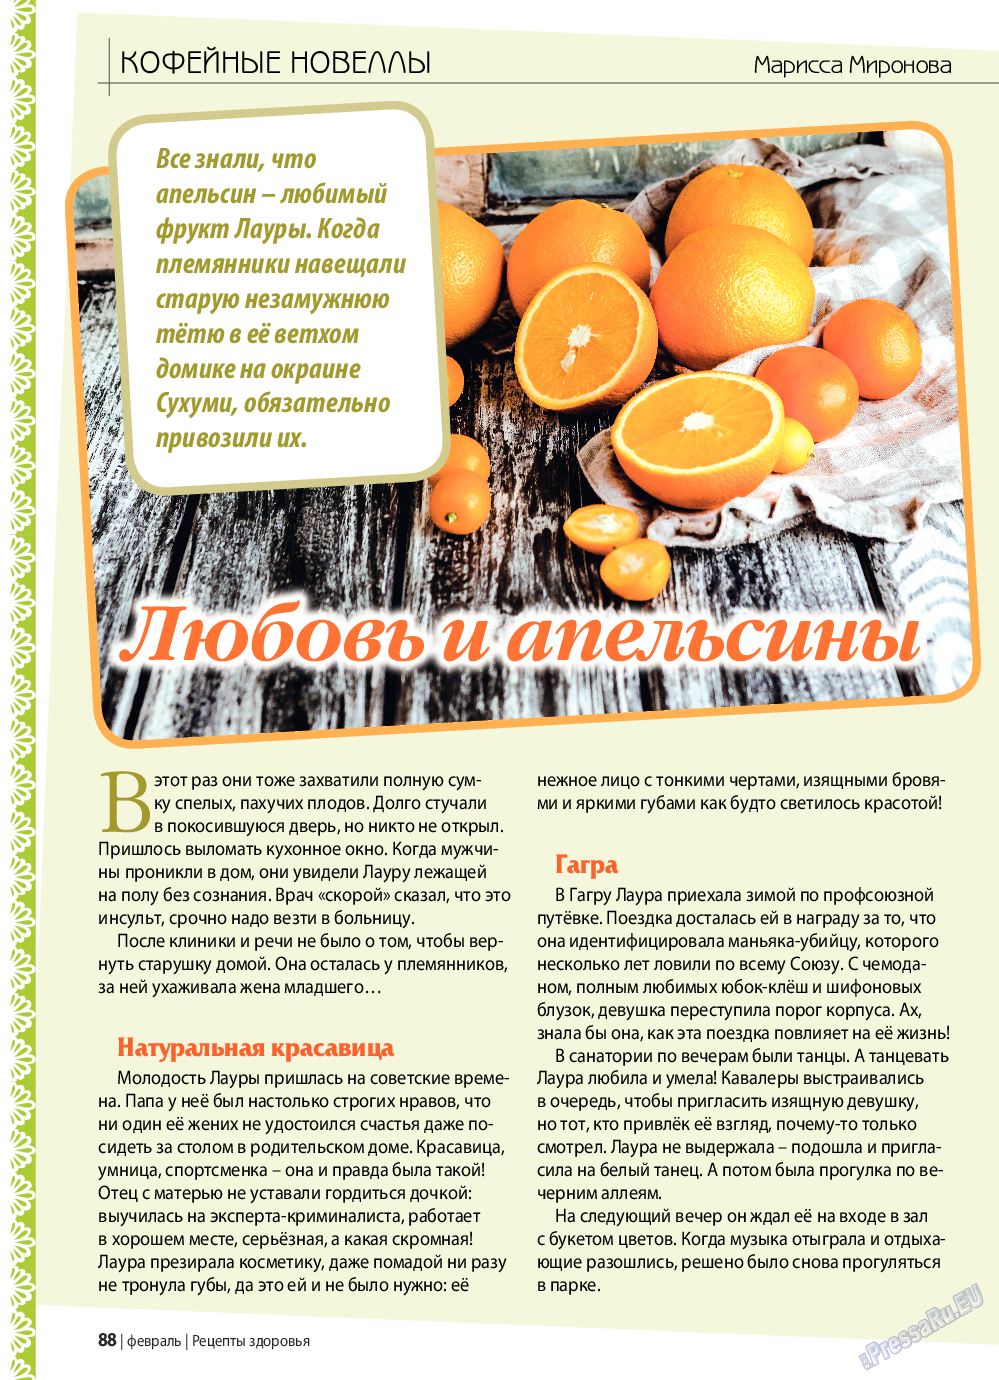 Рецепты здоровья, журнал. 2019 №117 стр.88